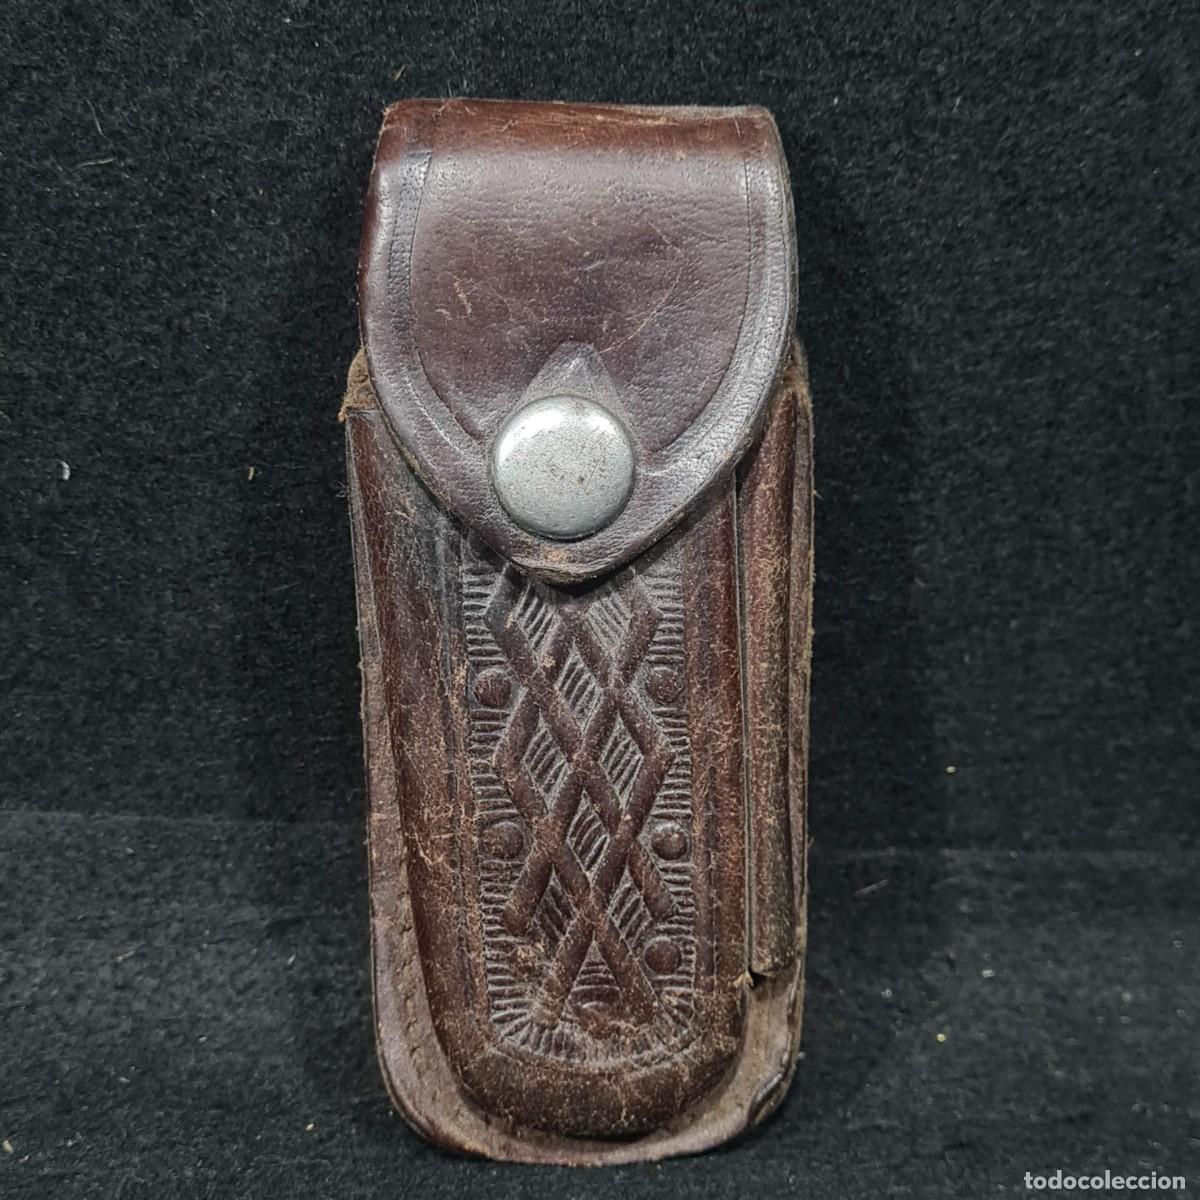 antigua funda de cuero para navaja con orificio - Buy Other collectible  objects on todocoleccion